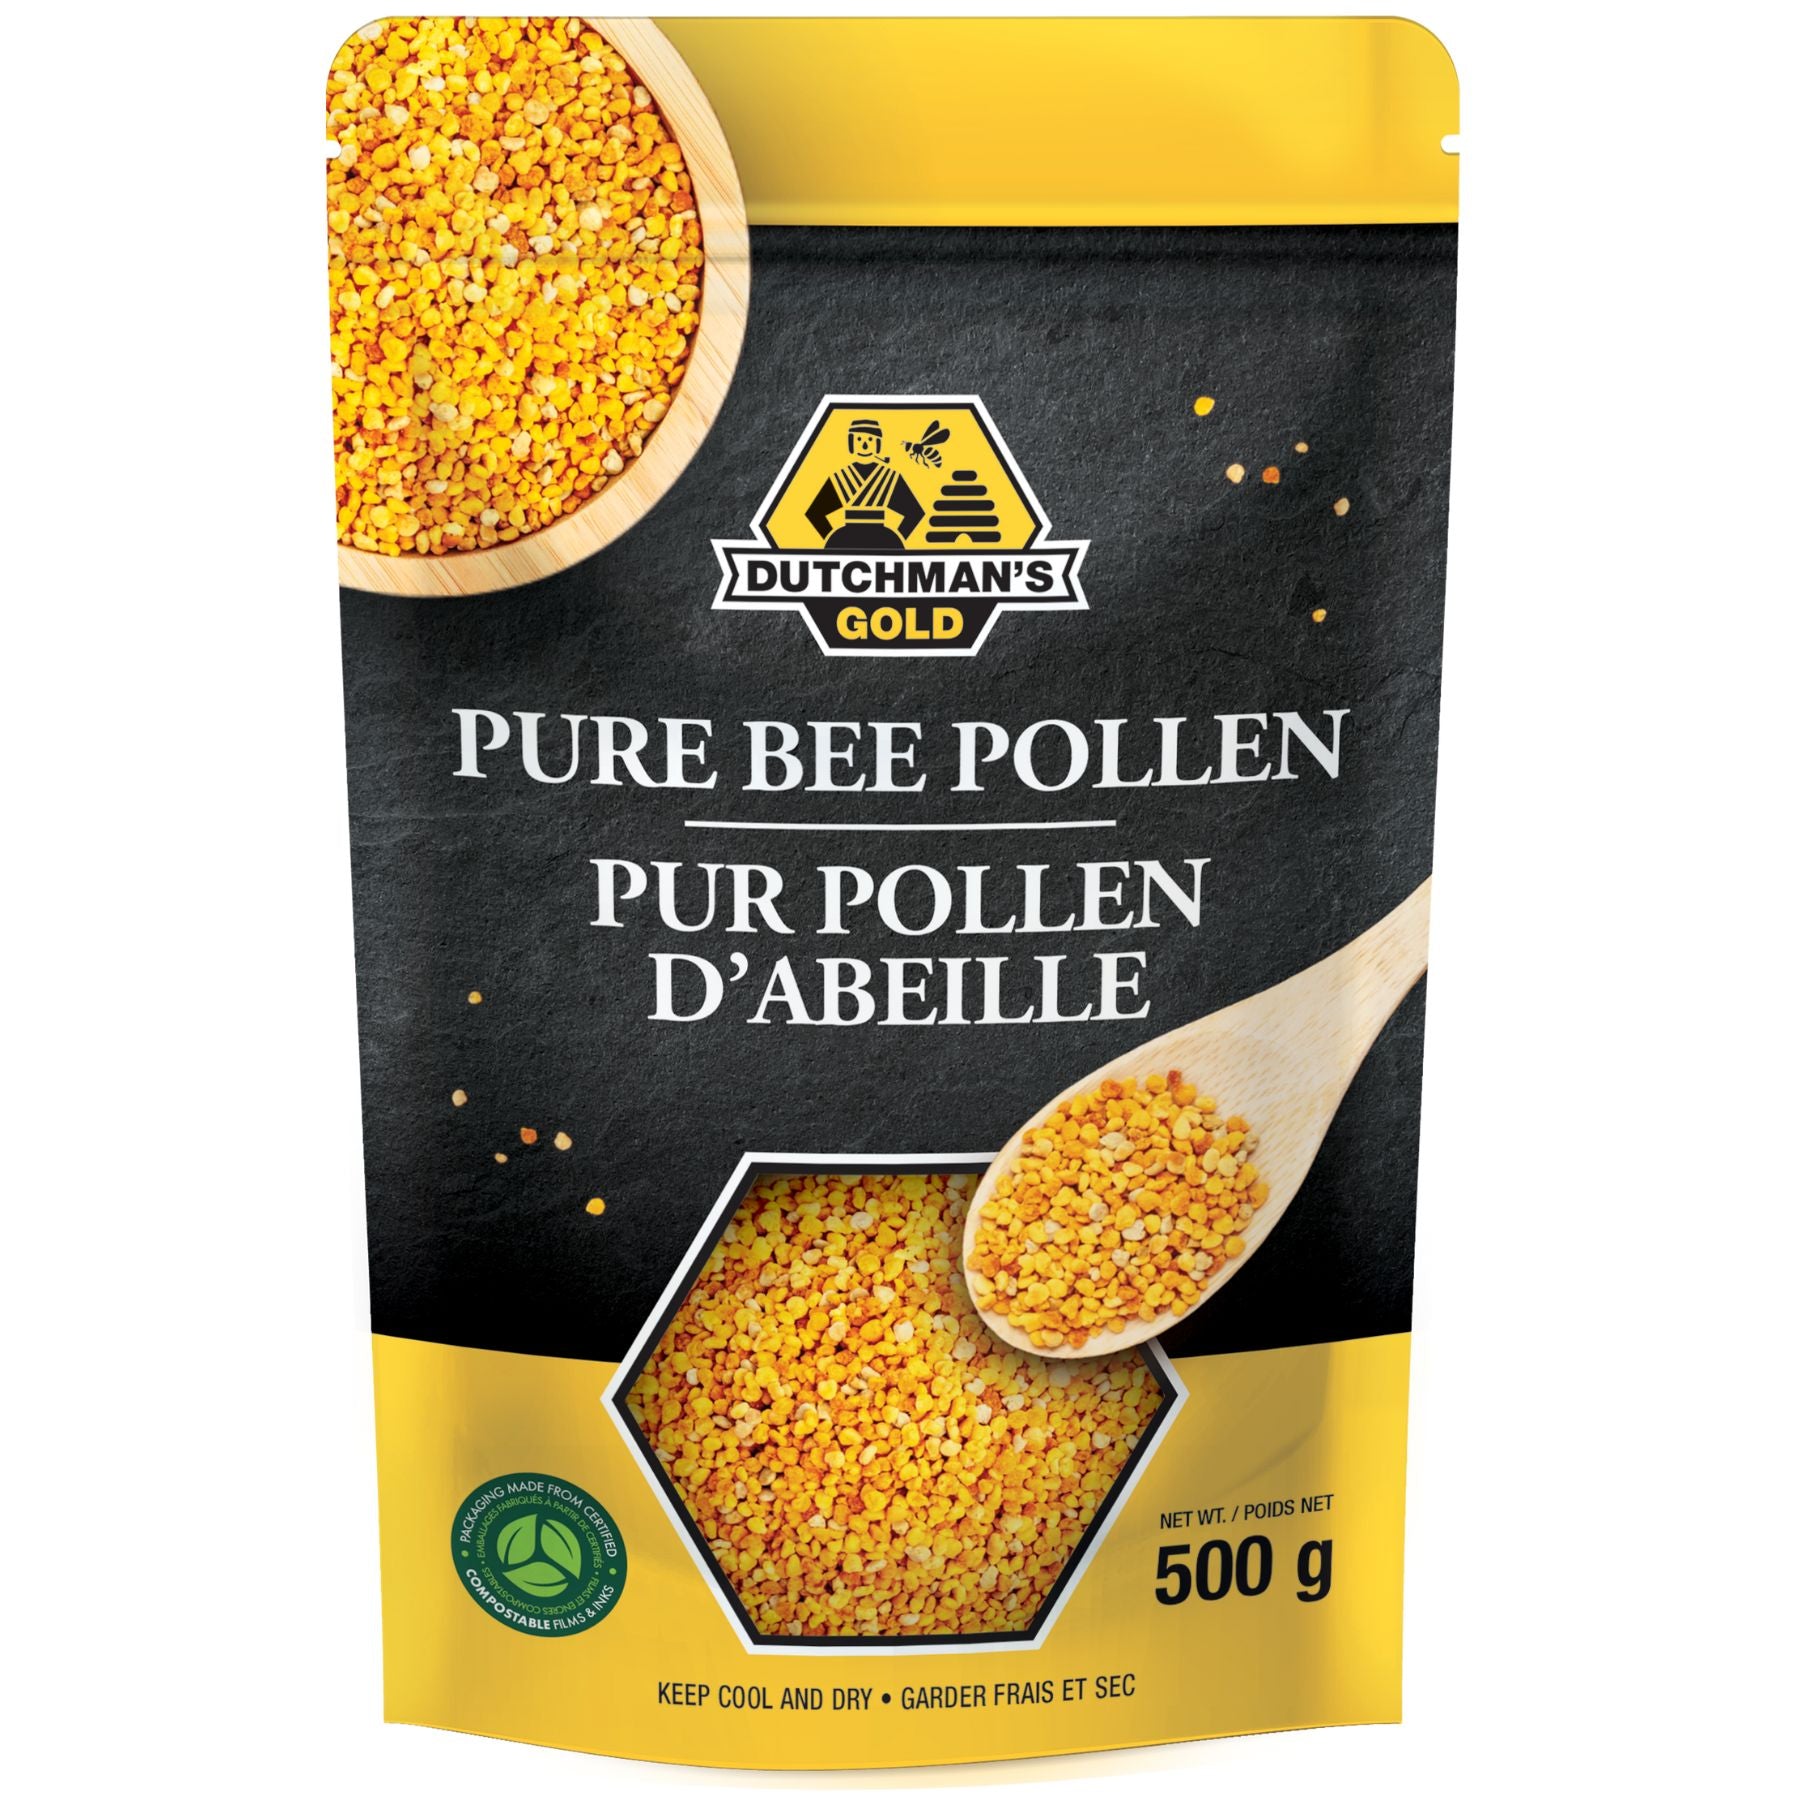 Dutchman's Gold Bee Pollen 500g